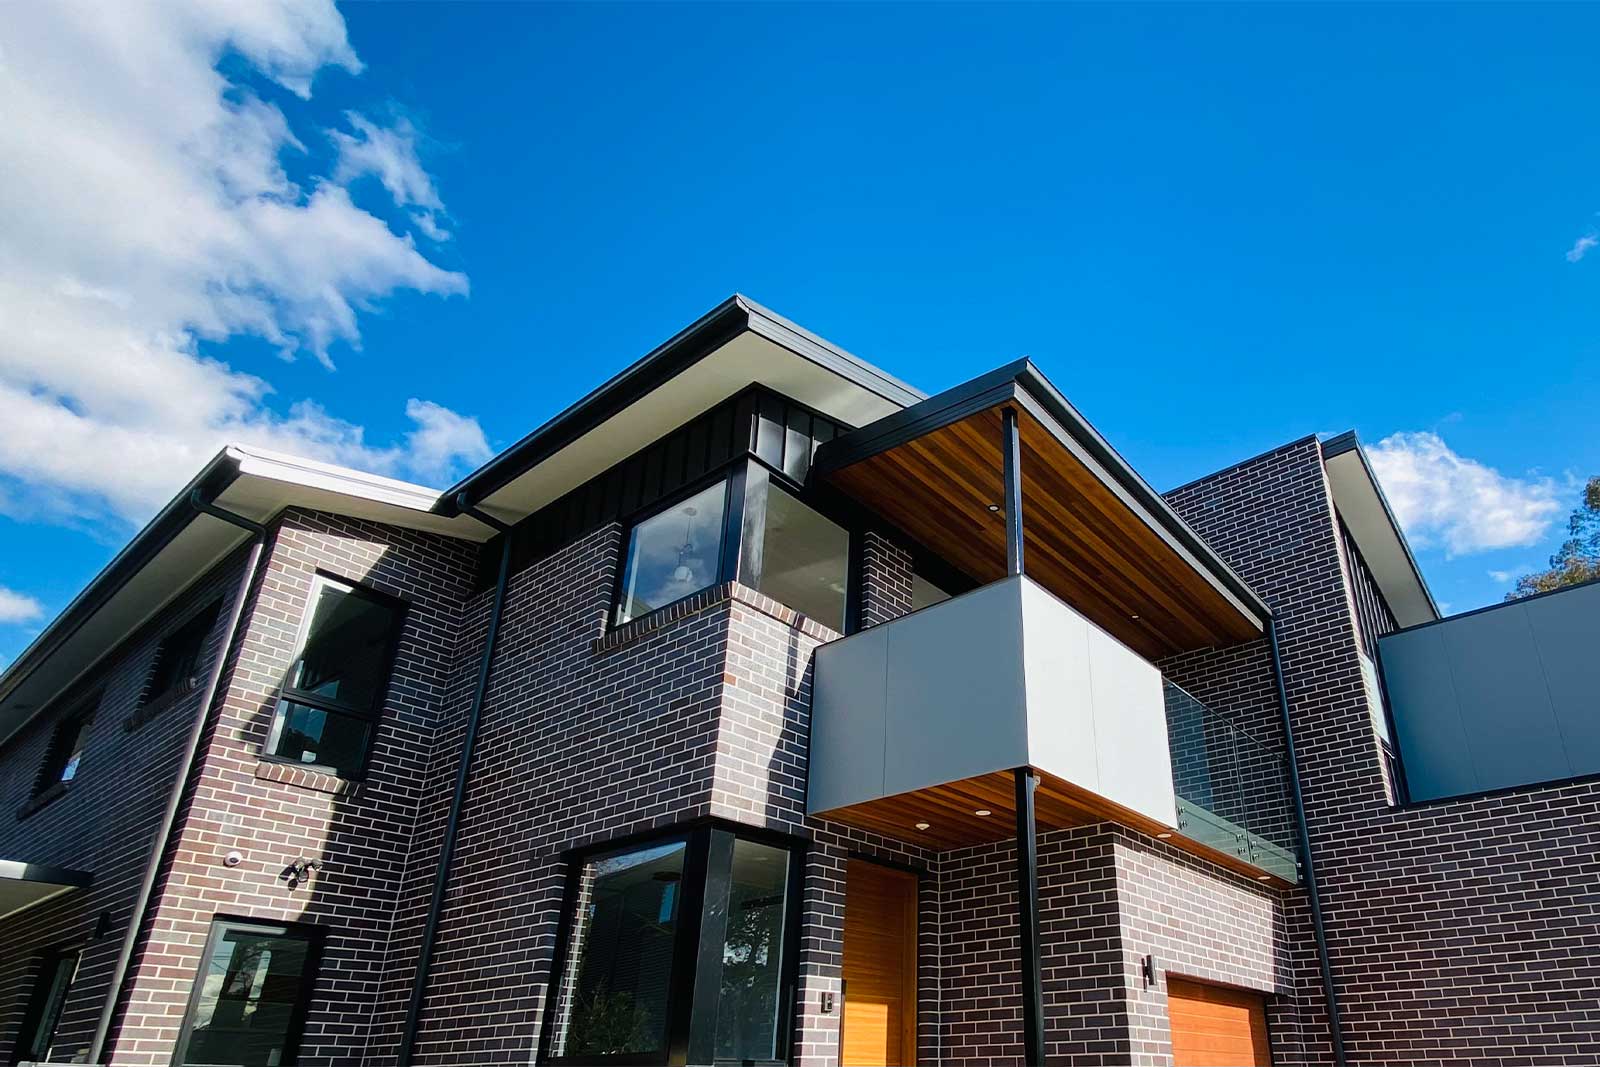 VK Architecture Sydney Architect Multi Unit Residential Design Build Duplex Ryde Ermington 4 